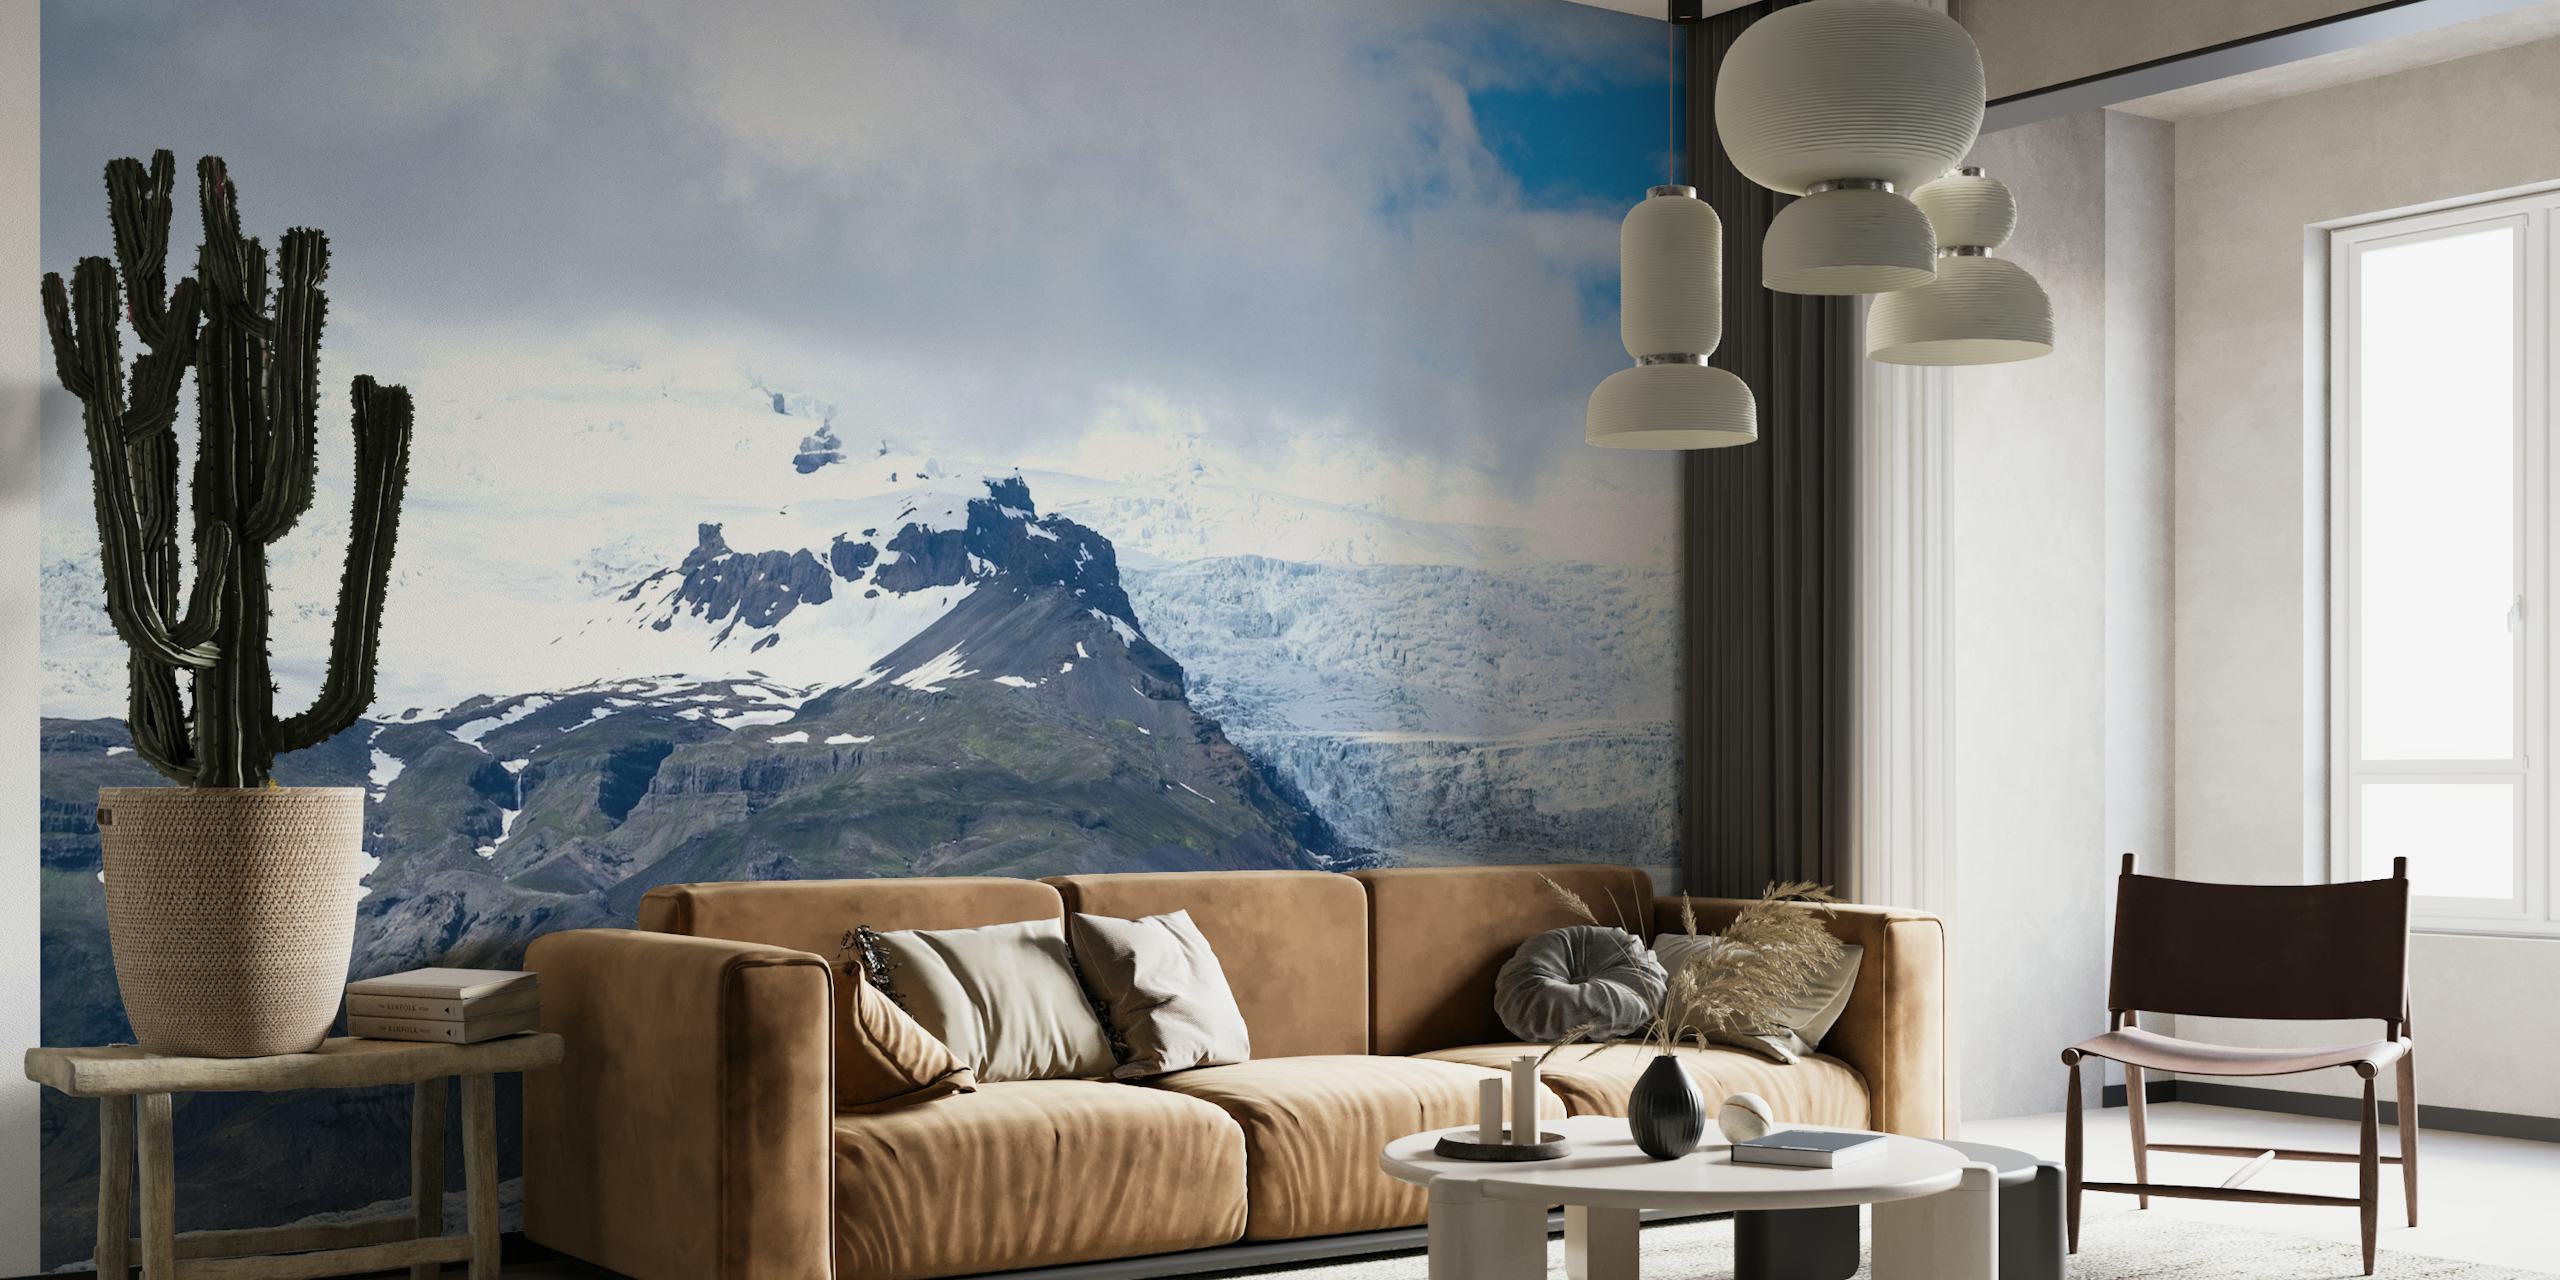 Carta da parati del ghiacciaio Breiðamerkurjökull con toni blu ghiaccio e cime montuose